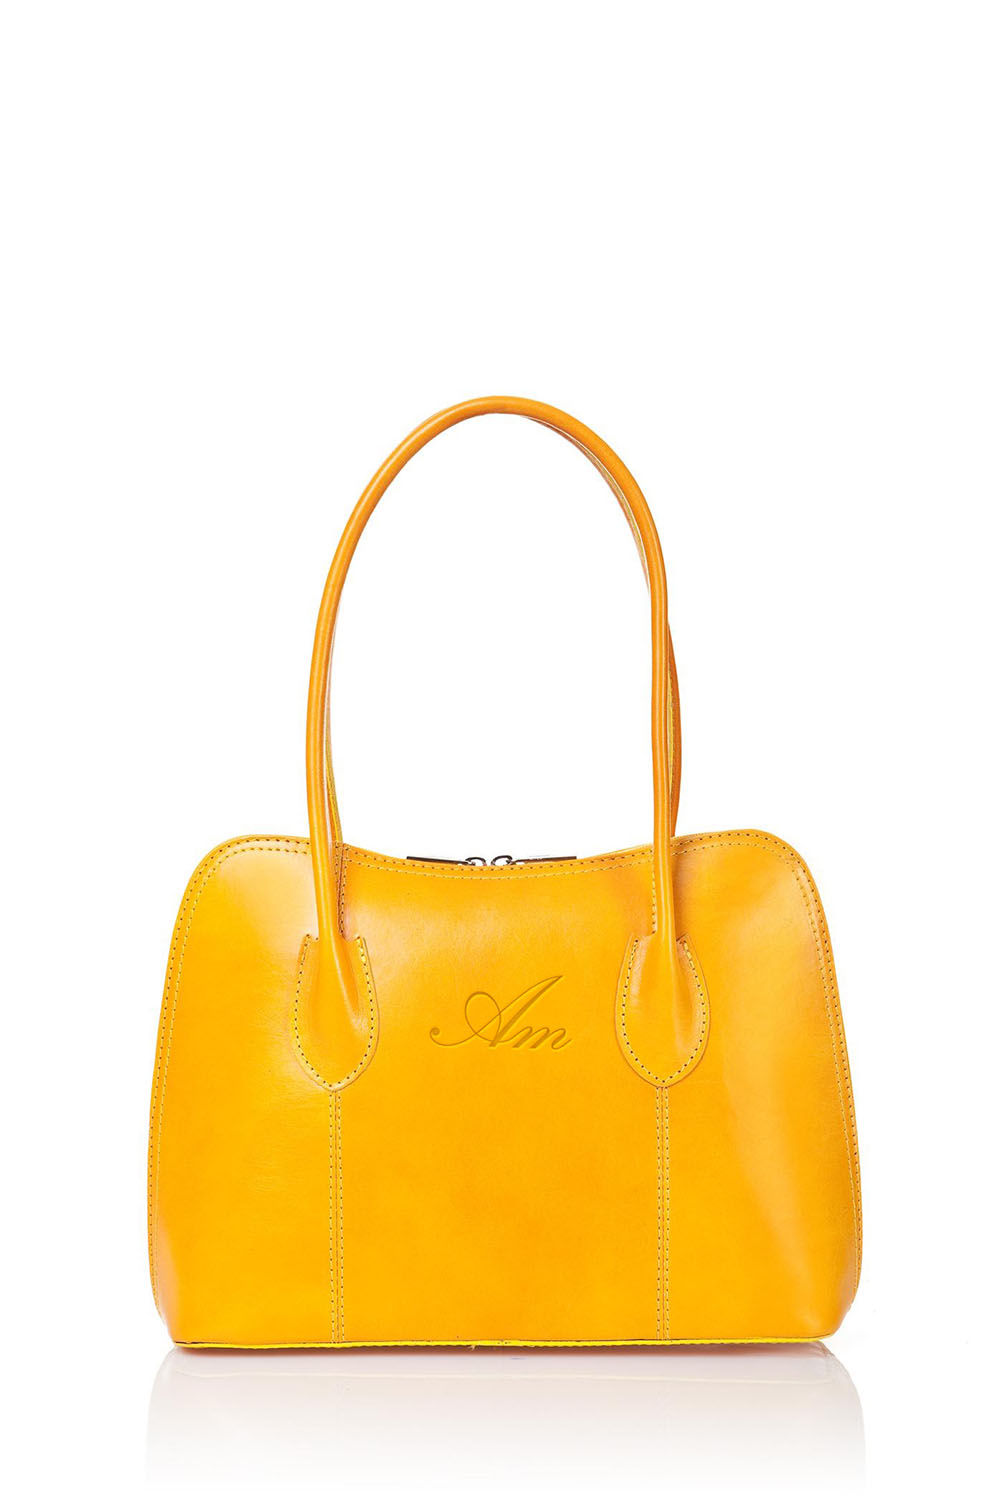 Alti Mora top luxury women handbag : Julia